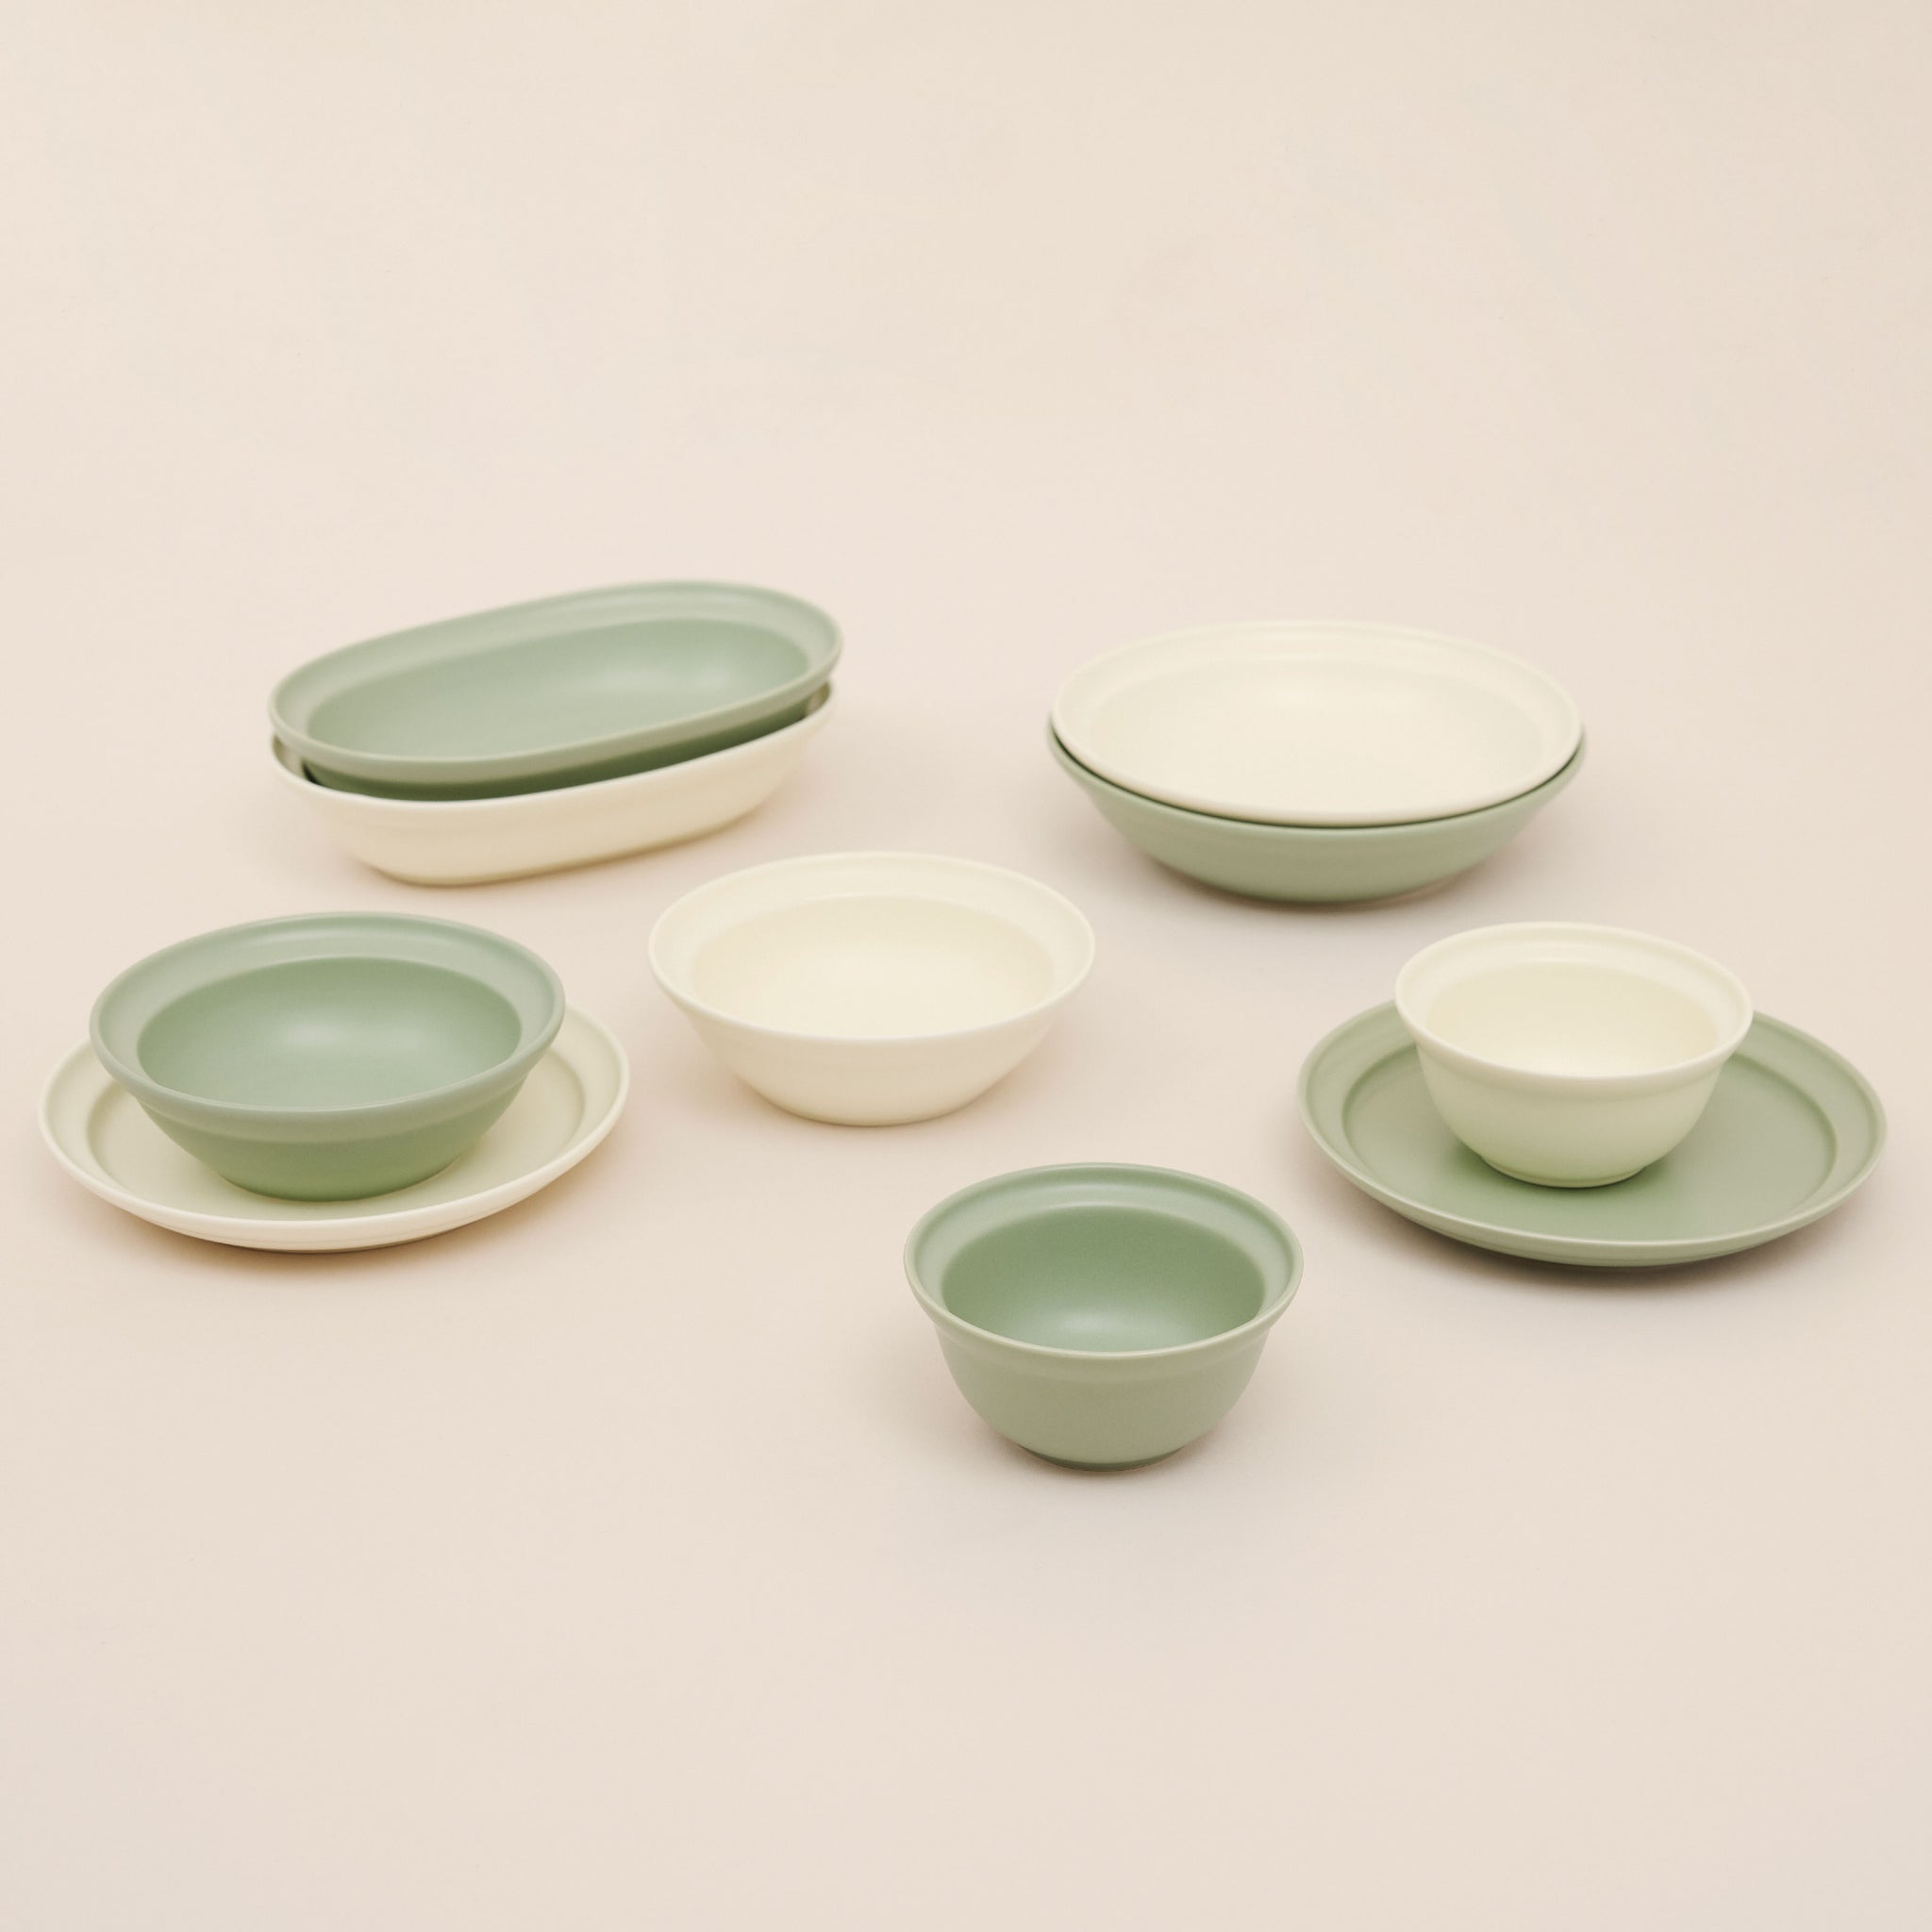 Ceramic Serving Plate 9.5 Inch | จานเซรามิก